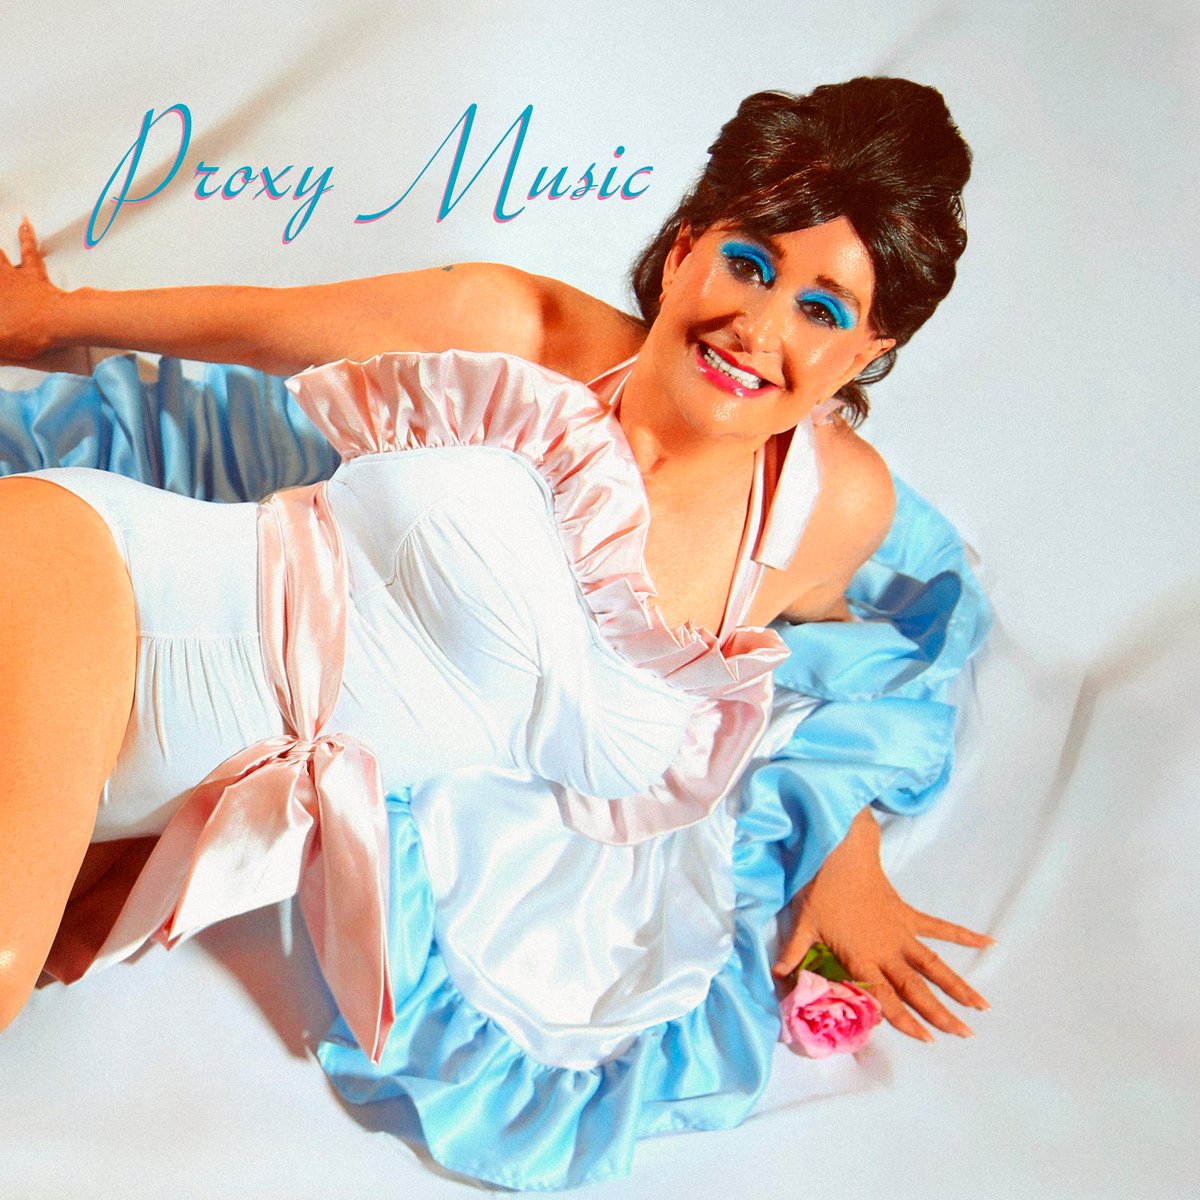 Posiblemente la tapa de disco más icónica del año. Linda Thompson recreando el debut de Roxy Music. Una sola letra para definirlo todo: se llama Proxy Music. Linda sufre una afección en las cuerdas vocales que le van quitando la voz. Amigos artistas y familia cantan por ella.